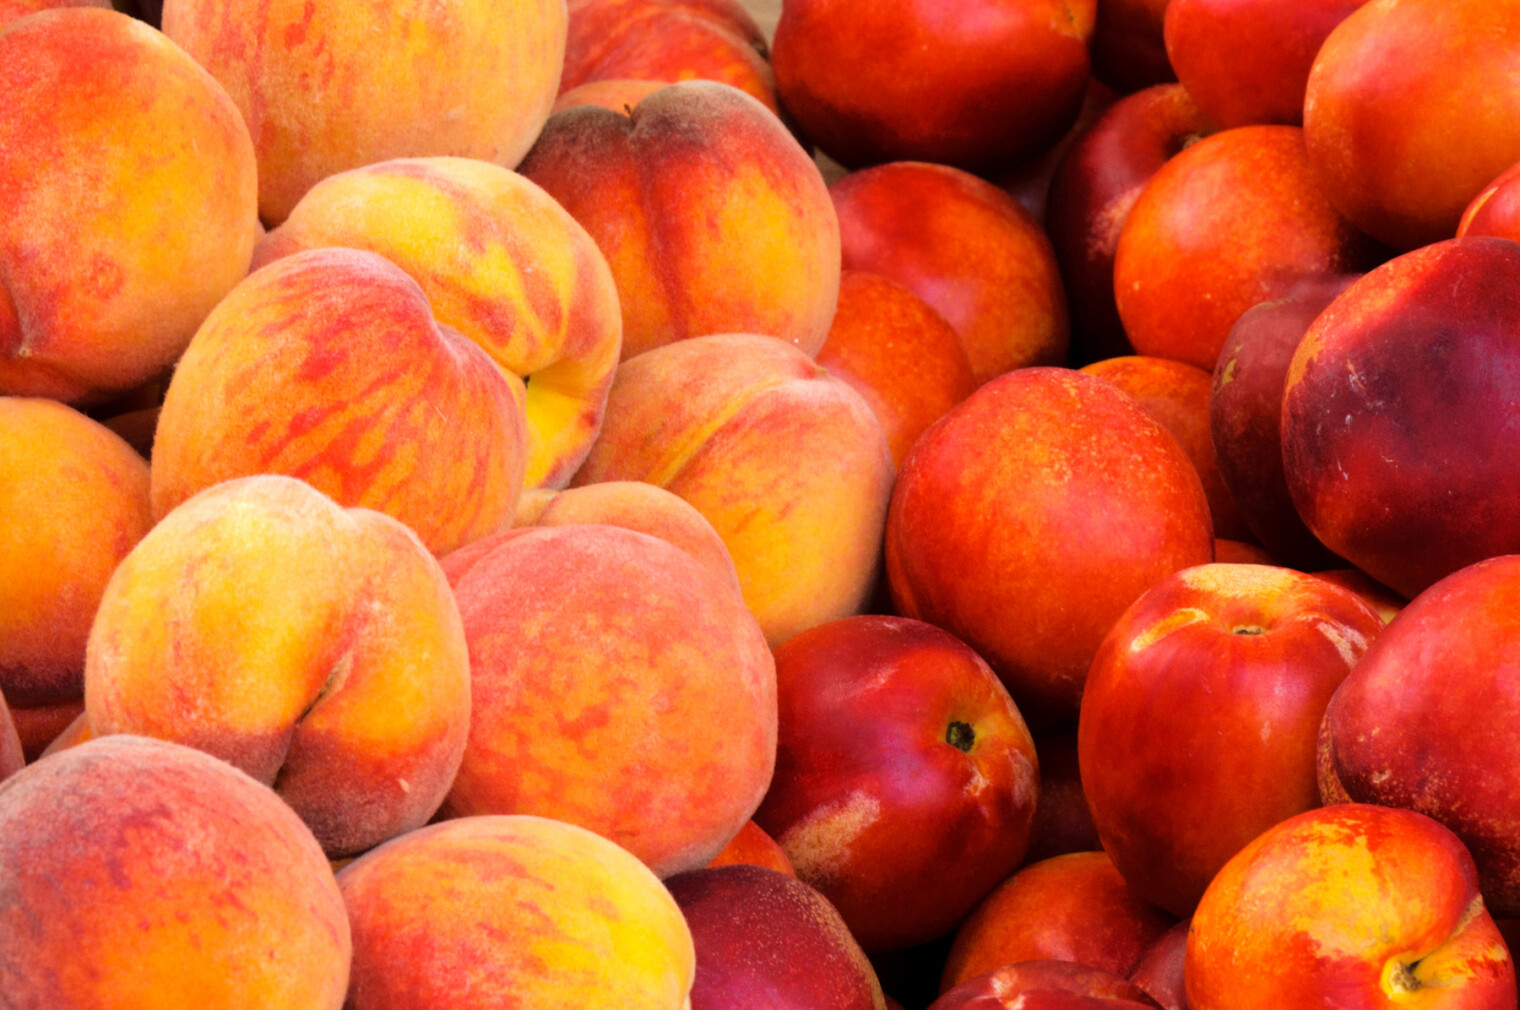 В некоторых случаях сходство плодов нектарина и персика бывает так велико, что первые выглядят точь-в-точь как отполированные образцы вторых